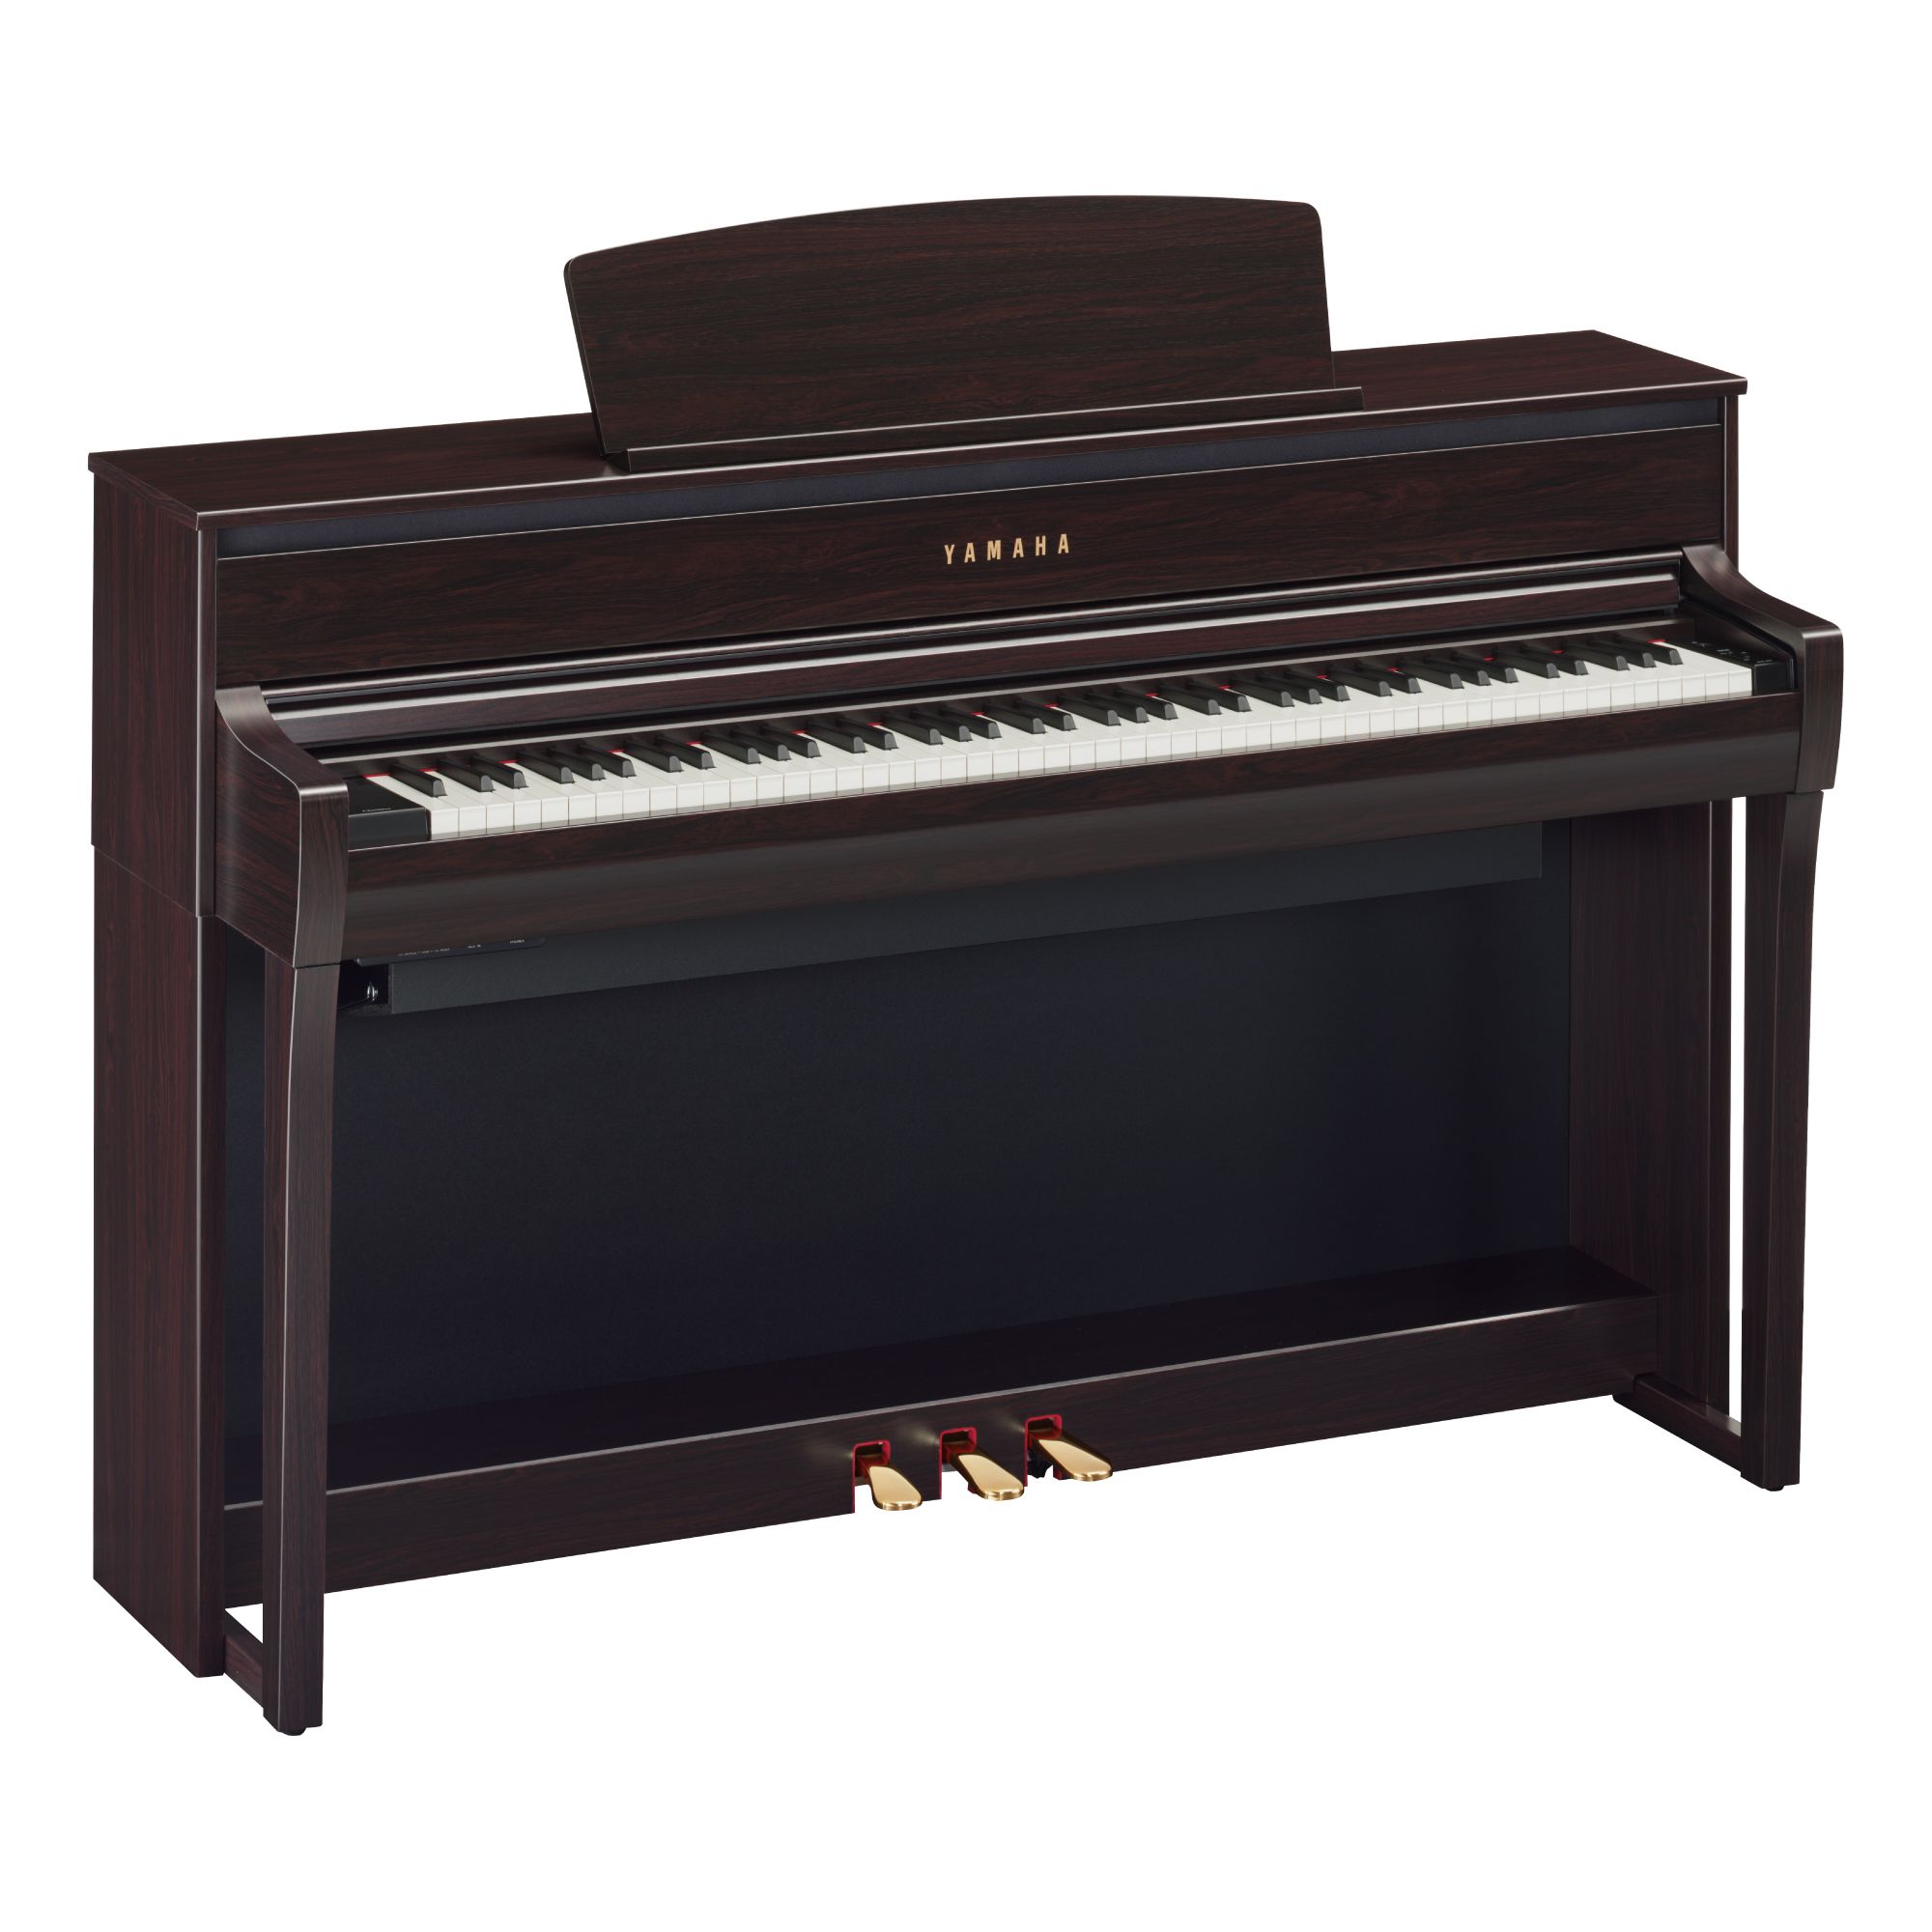 電子ピアノSCLP-7350